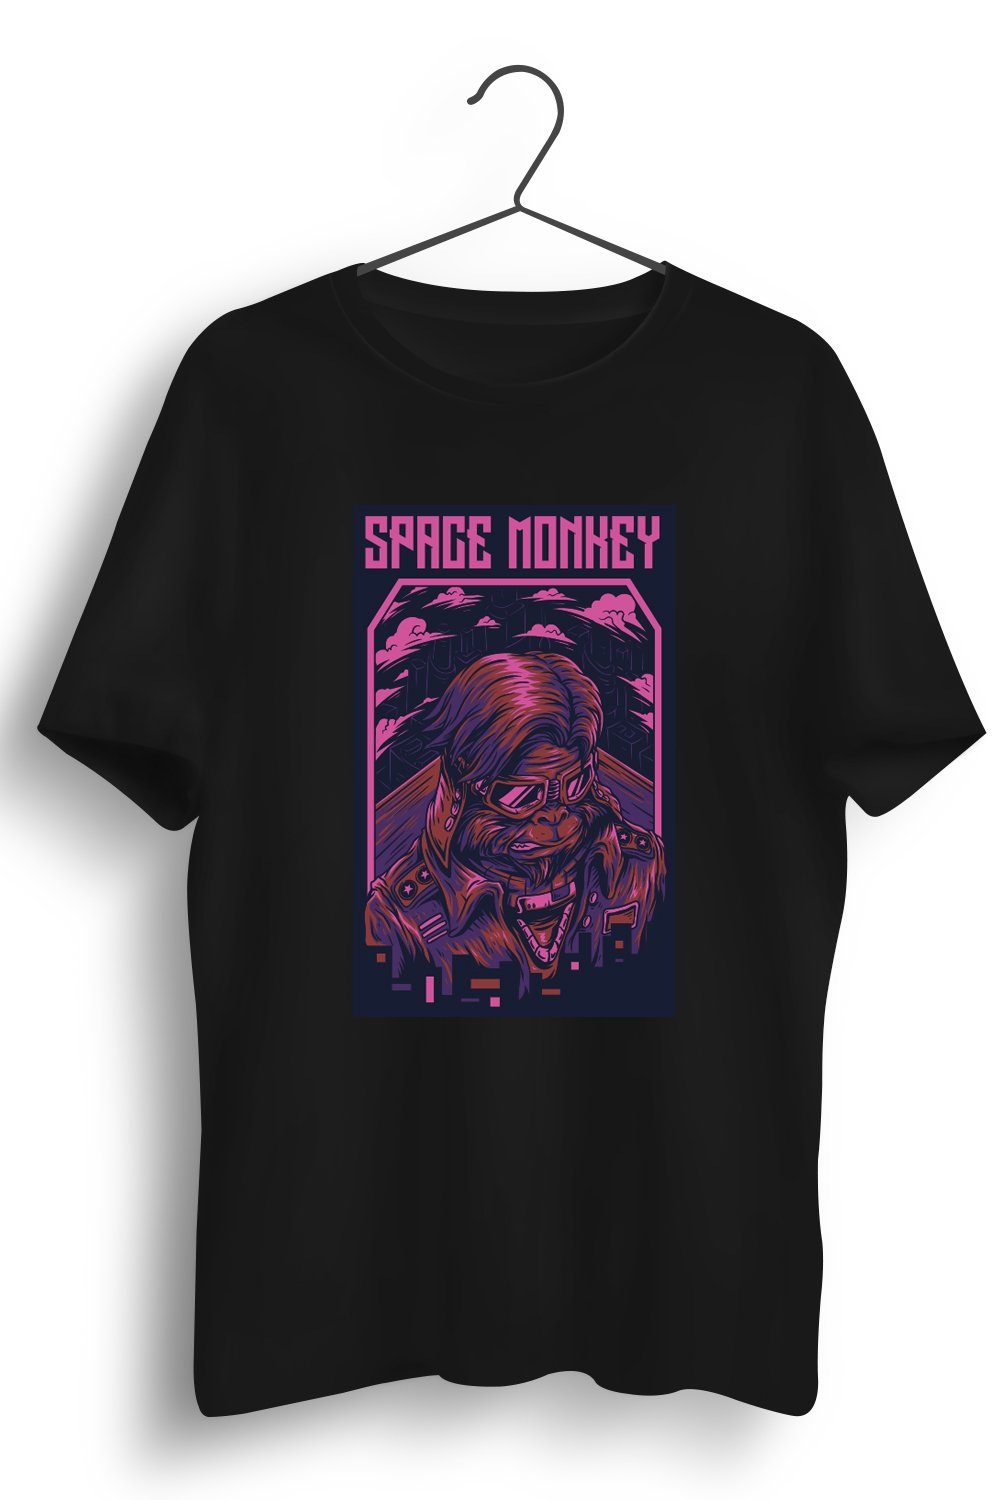 Space Monkey Graphic Printed Black Tshirt